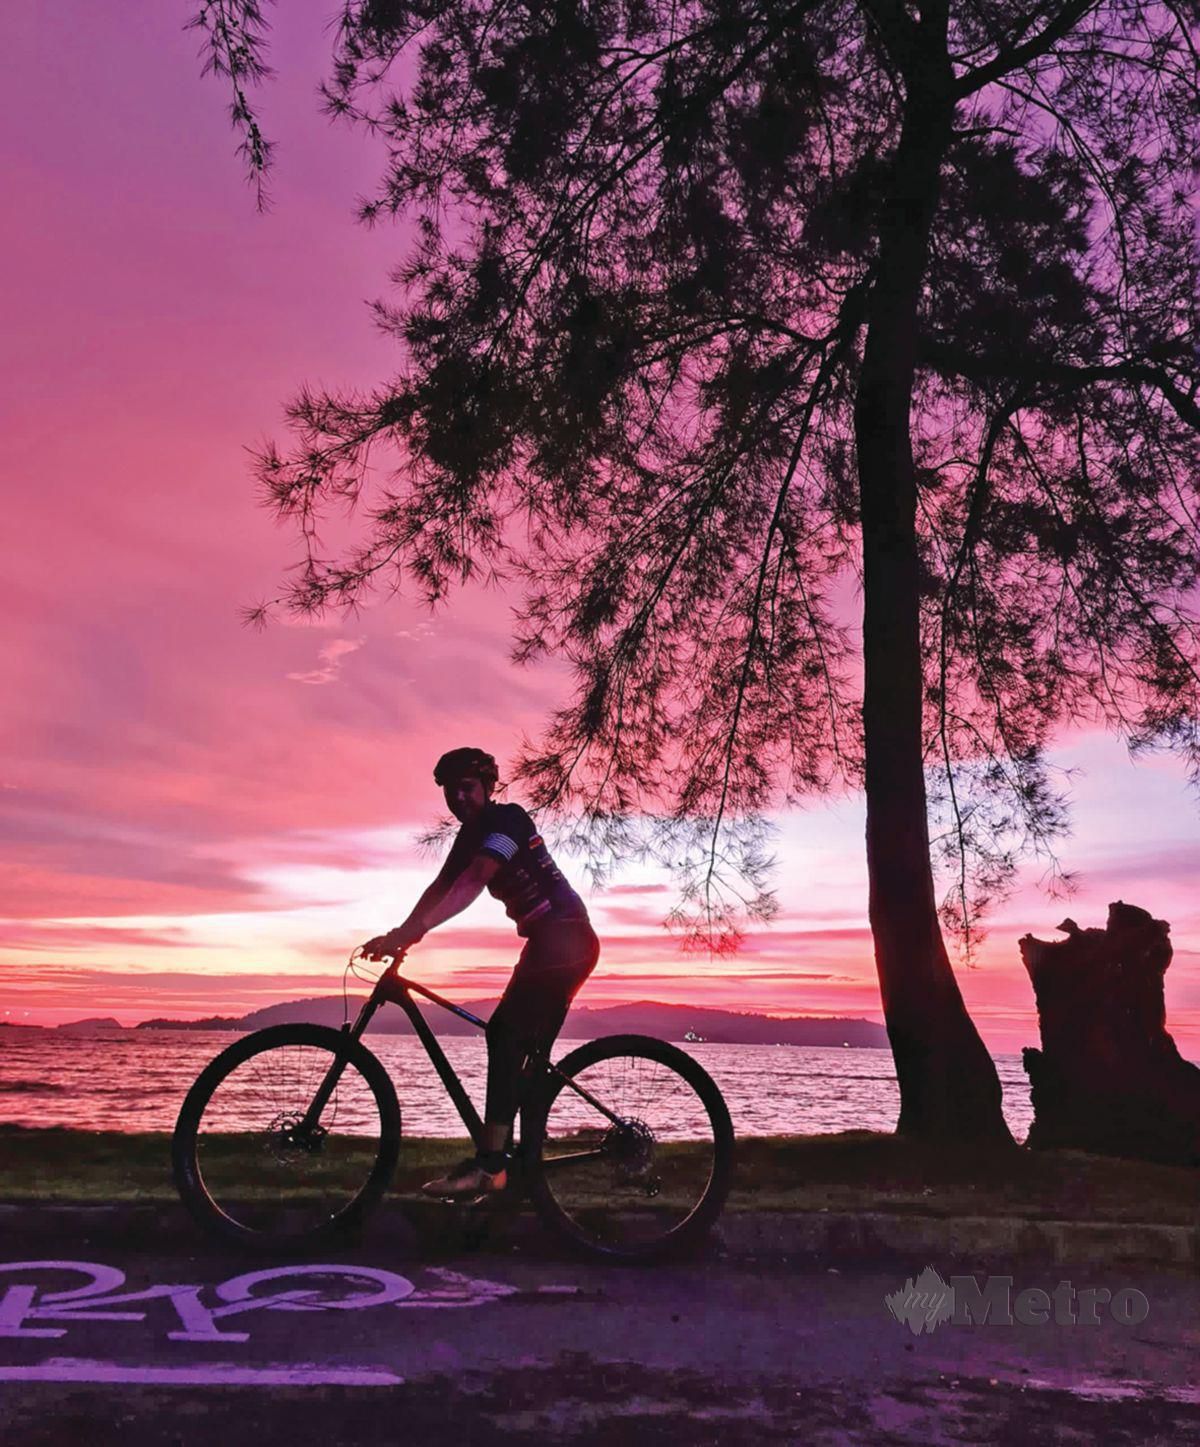 SAMBIL beriadah, anda bersama keluarga boleh menikmati keindahan matahari terbenam di Taman awam Teluk Likas.